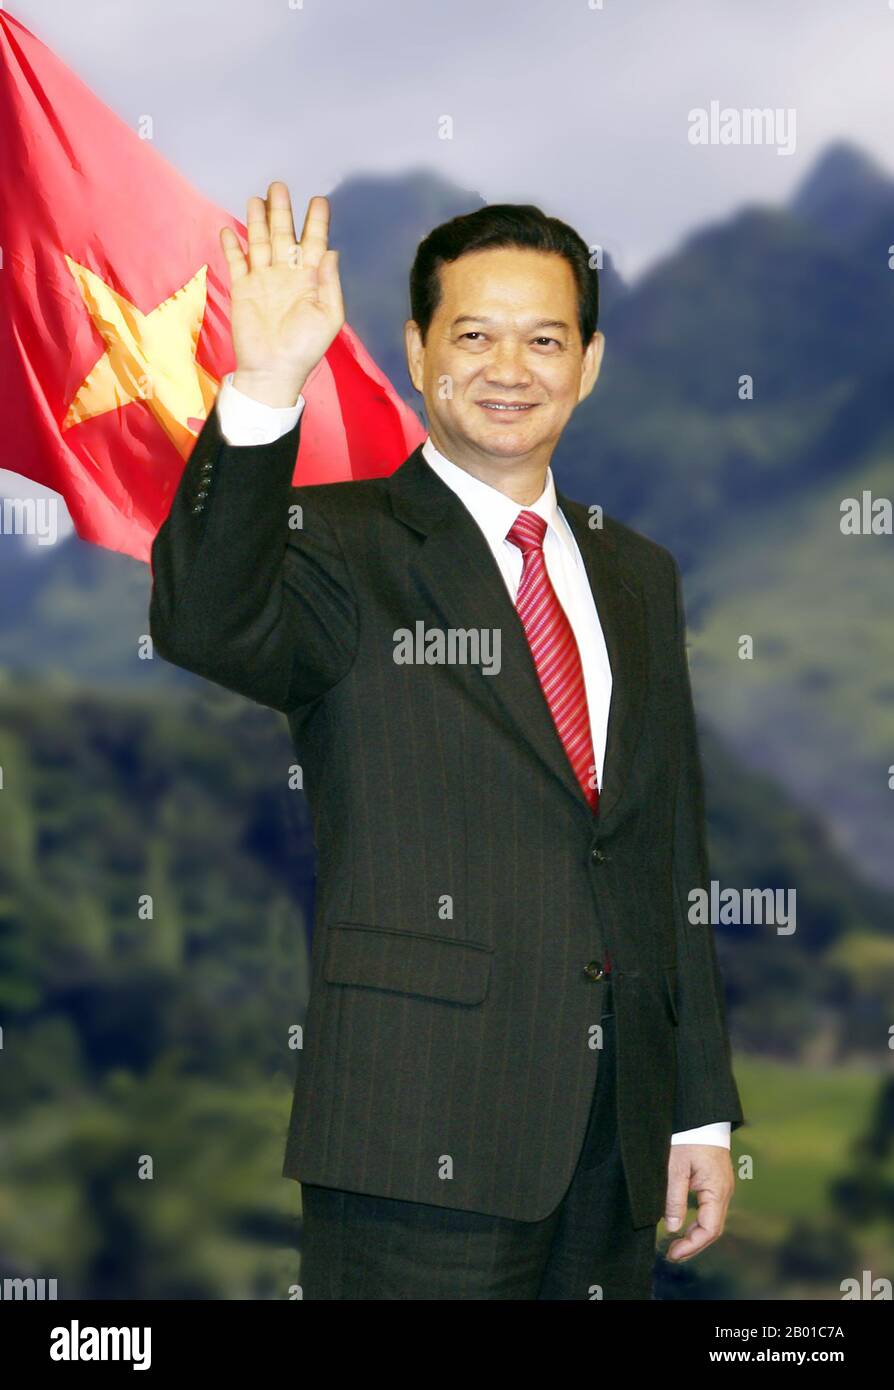 Vietnam: Nguyen Tan Dung (17 novembre 1949 - ), 6th Premier ministre du Vietnam (r. 2006-2016). Nguyễn Tấn Dũng a été Premier ministre de 2006 à 2016. Il a été confirmé par l'Assemblée nationale sur le 27 juin 2006, qui a été nommé par son prédécesseur, Phan Van Khai, qui a pris sa retraite. Lors d'un congrès du parti en janvier 2011, Dung a été classé troisième dans la hiérarchie du Parti communiste du Vietnam, mais a été incapable de maintenir son poste après le Congrès national de 12th en 2016 en raison de plaintes de corruption et de népotisme. Banque D'Images